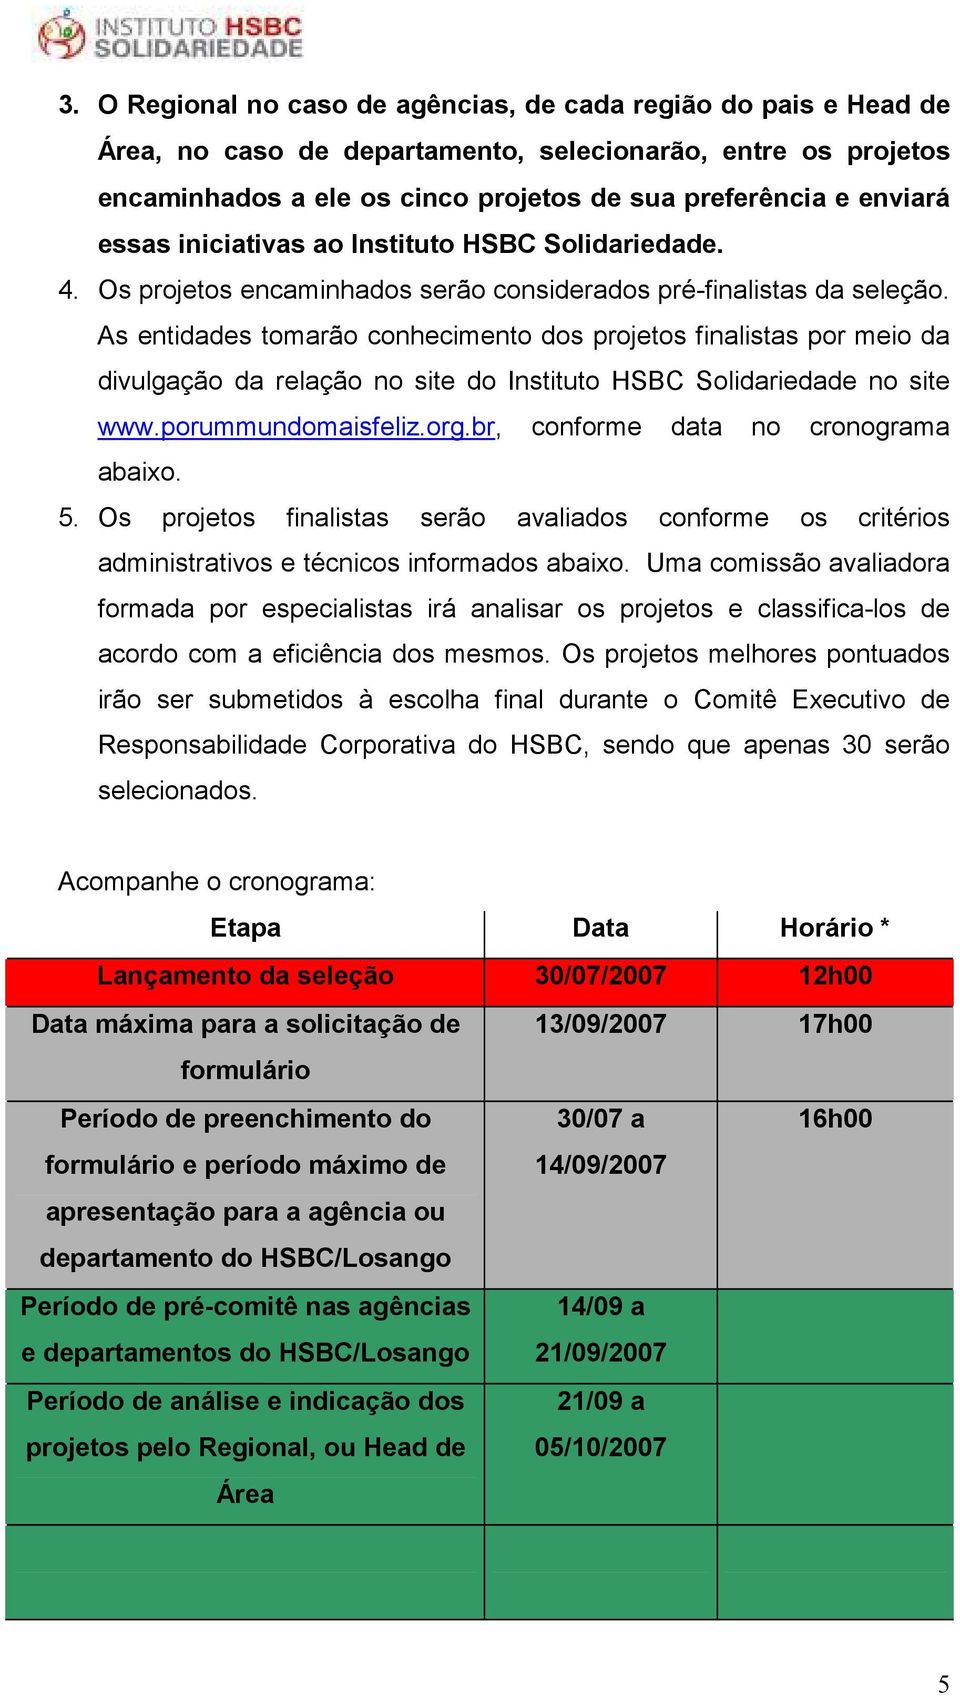 As entidades tomarão conhecimento dos projetos finalistas por meio da divulgação da relação no site do Instituto HSBC Solidariedade no site www.porummundomaisfeliz.org.